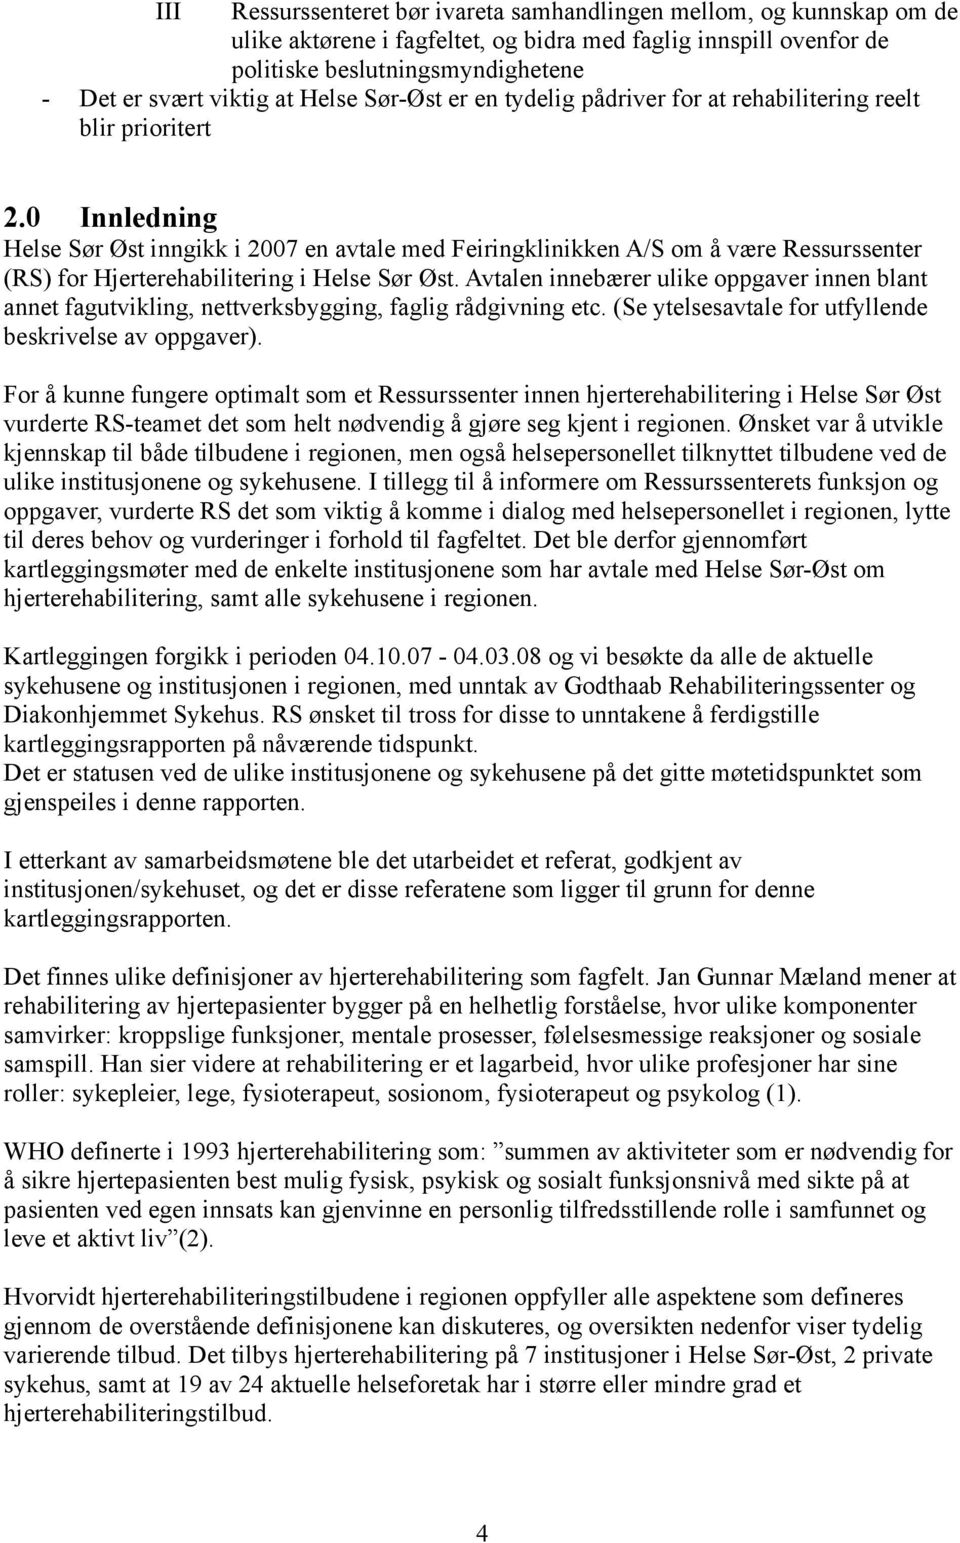 0 Innledning Helse Sør Øst inngikk i 2007 en avtale med Feiringklinikken A/S om å være Ressurssenter (RS) for Hjerterehabilitering i Helse Sør Øst.